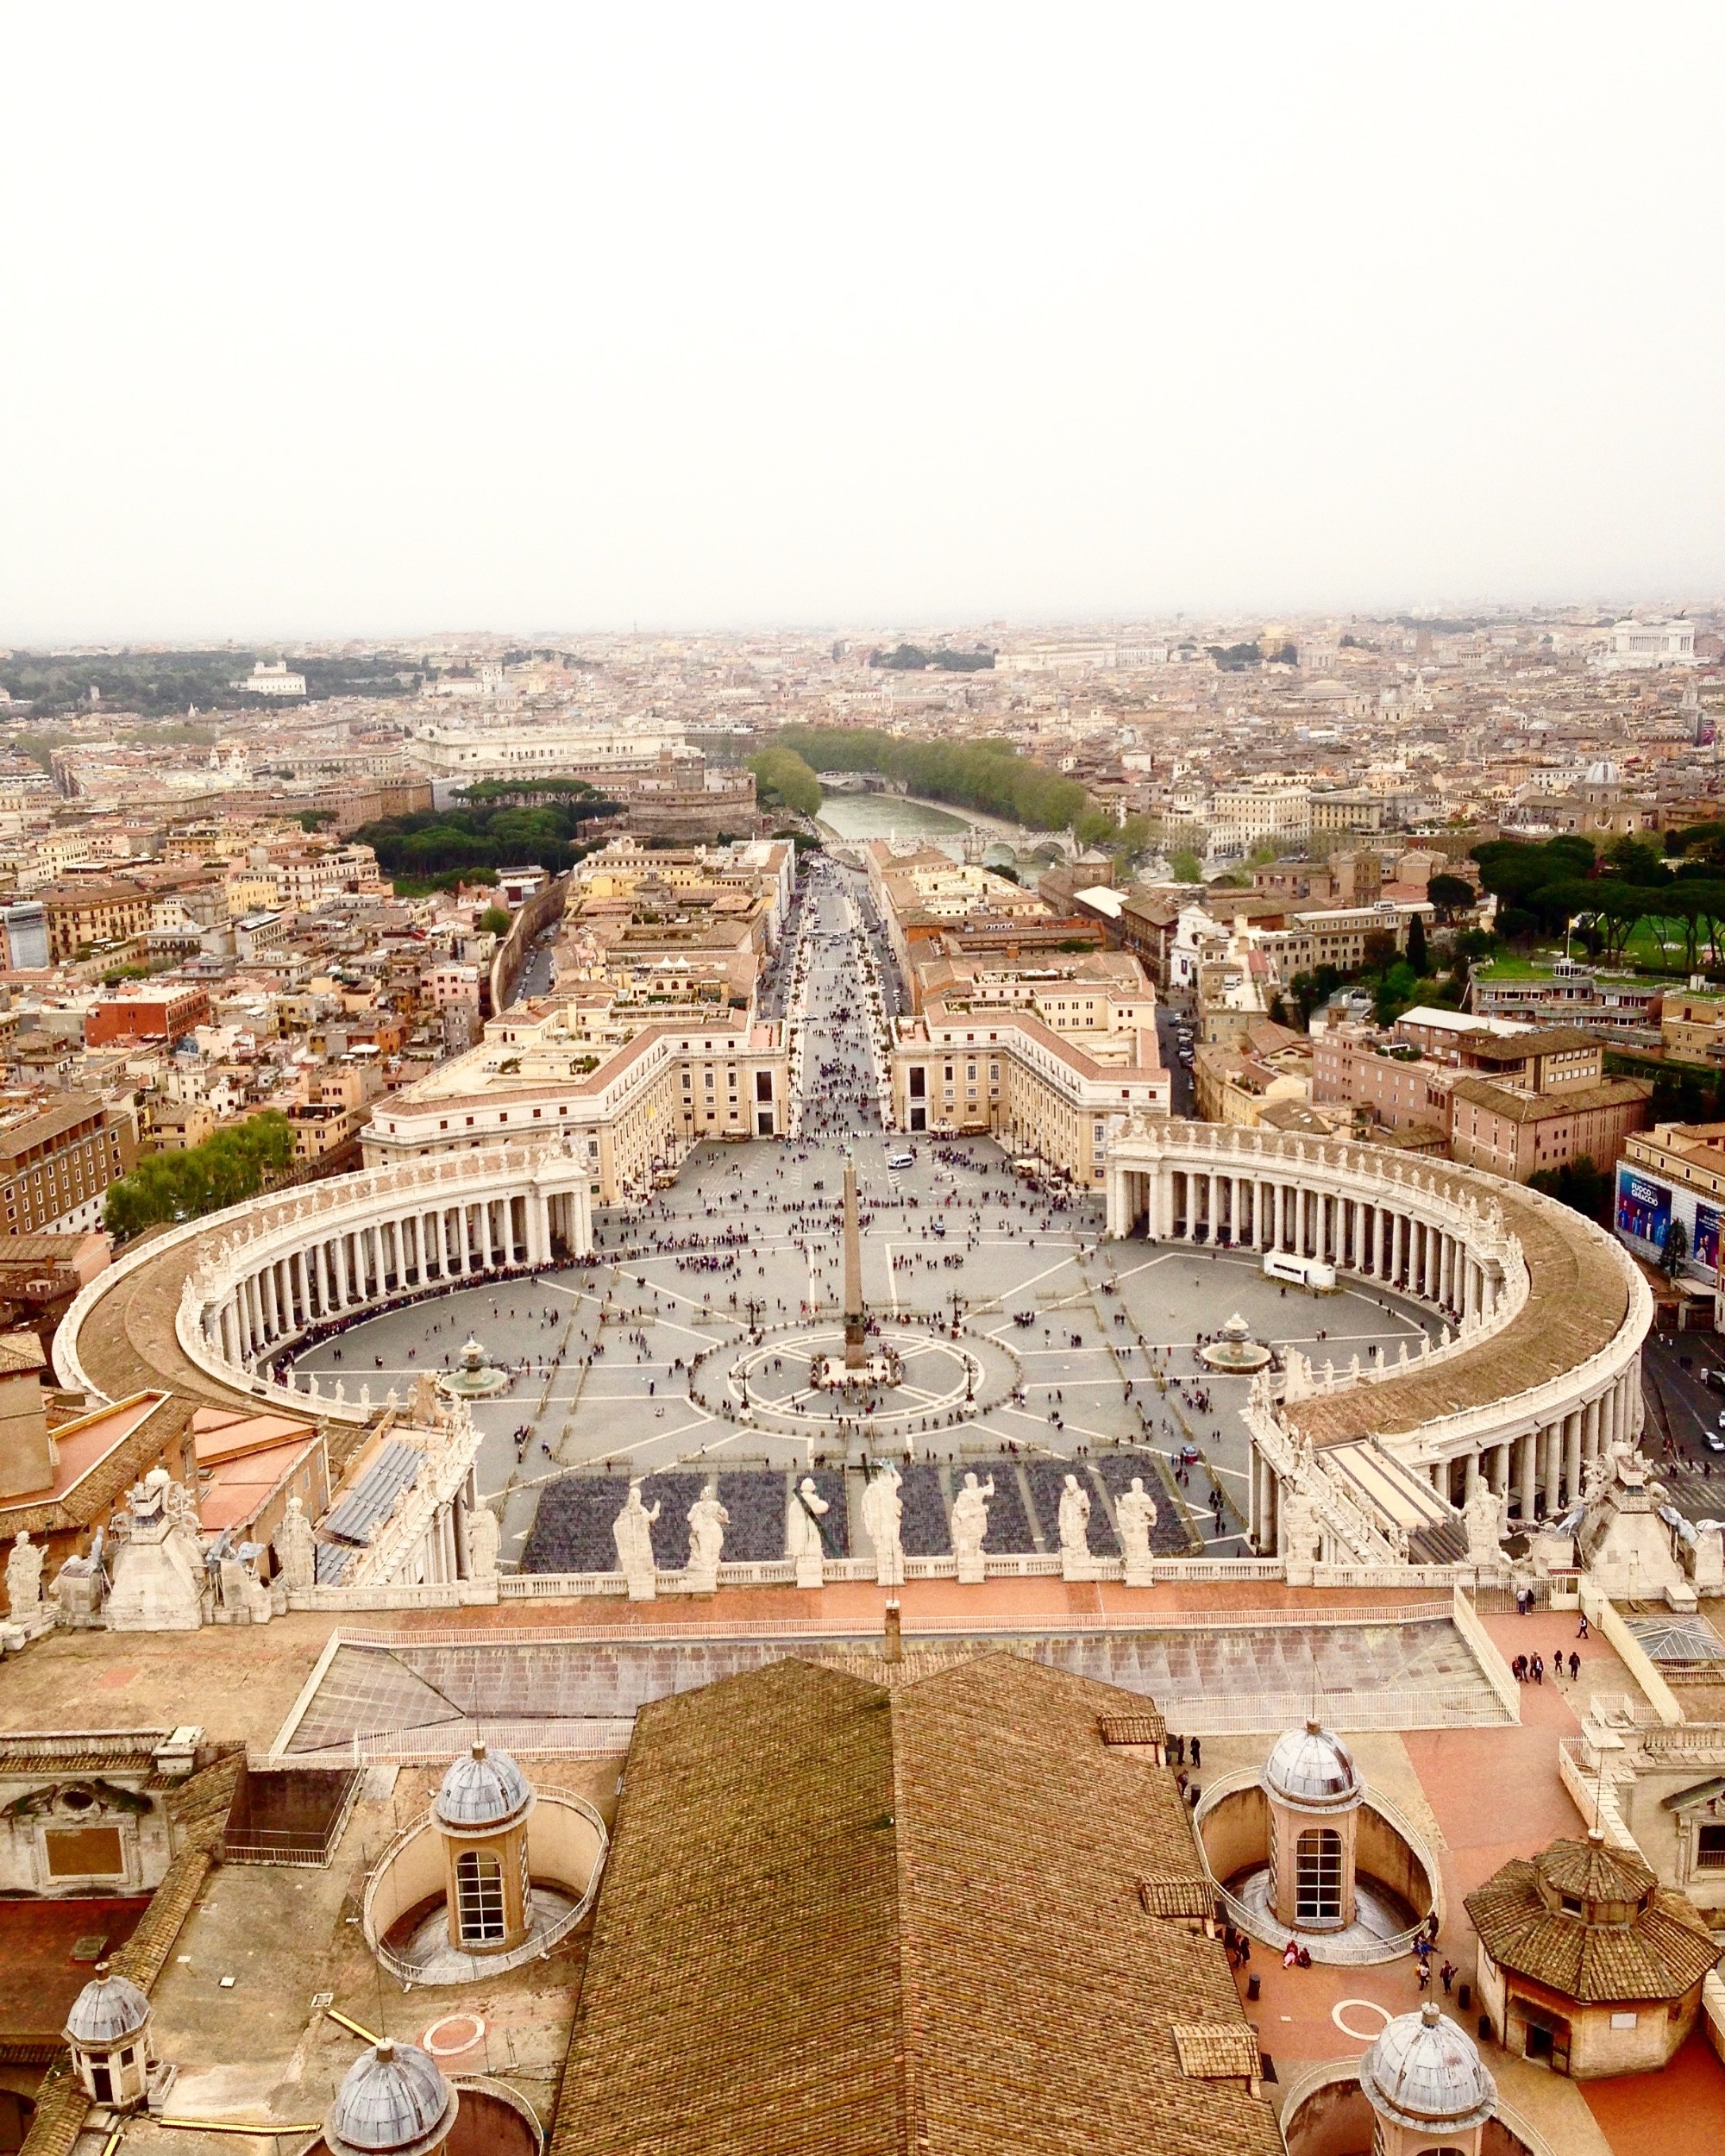 Вид сверху Ватикана =)С 11 февраля 1929 года Ватикан стал независимым государством с наименованием Град Ватикан. Мало кто знает, что в римскую эпоху на Ватиканском холме был сооружен цирк для потех